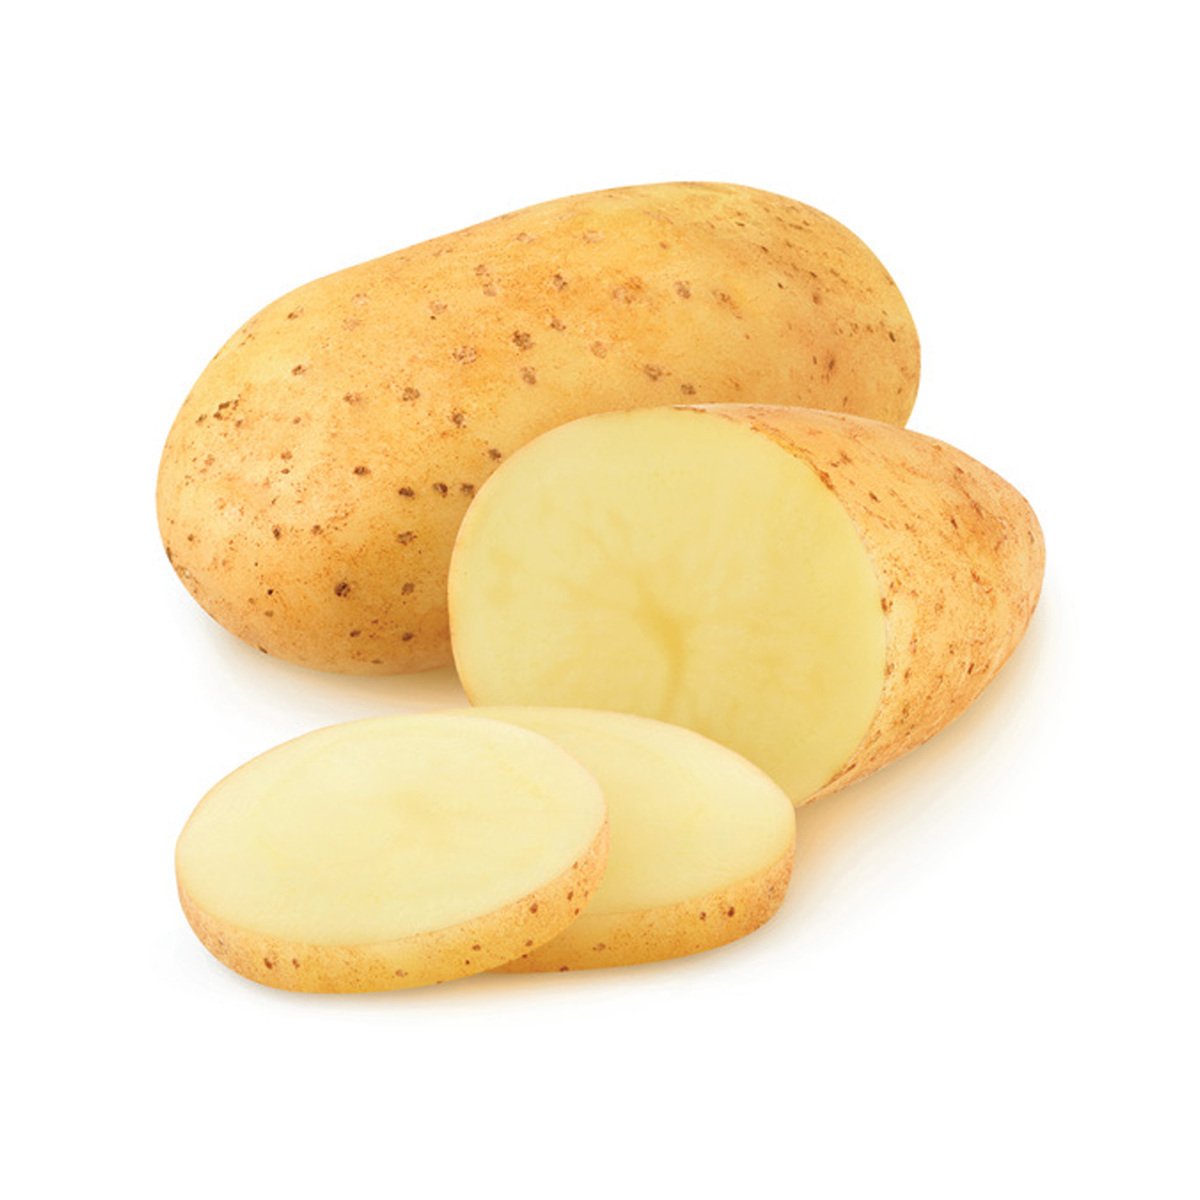 Potato UAE 1 kg